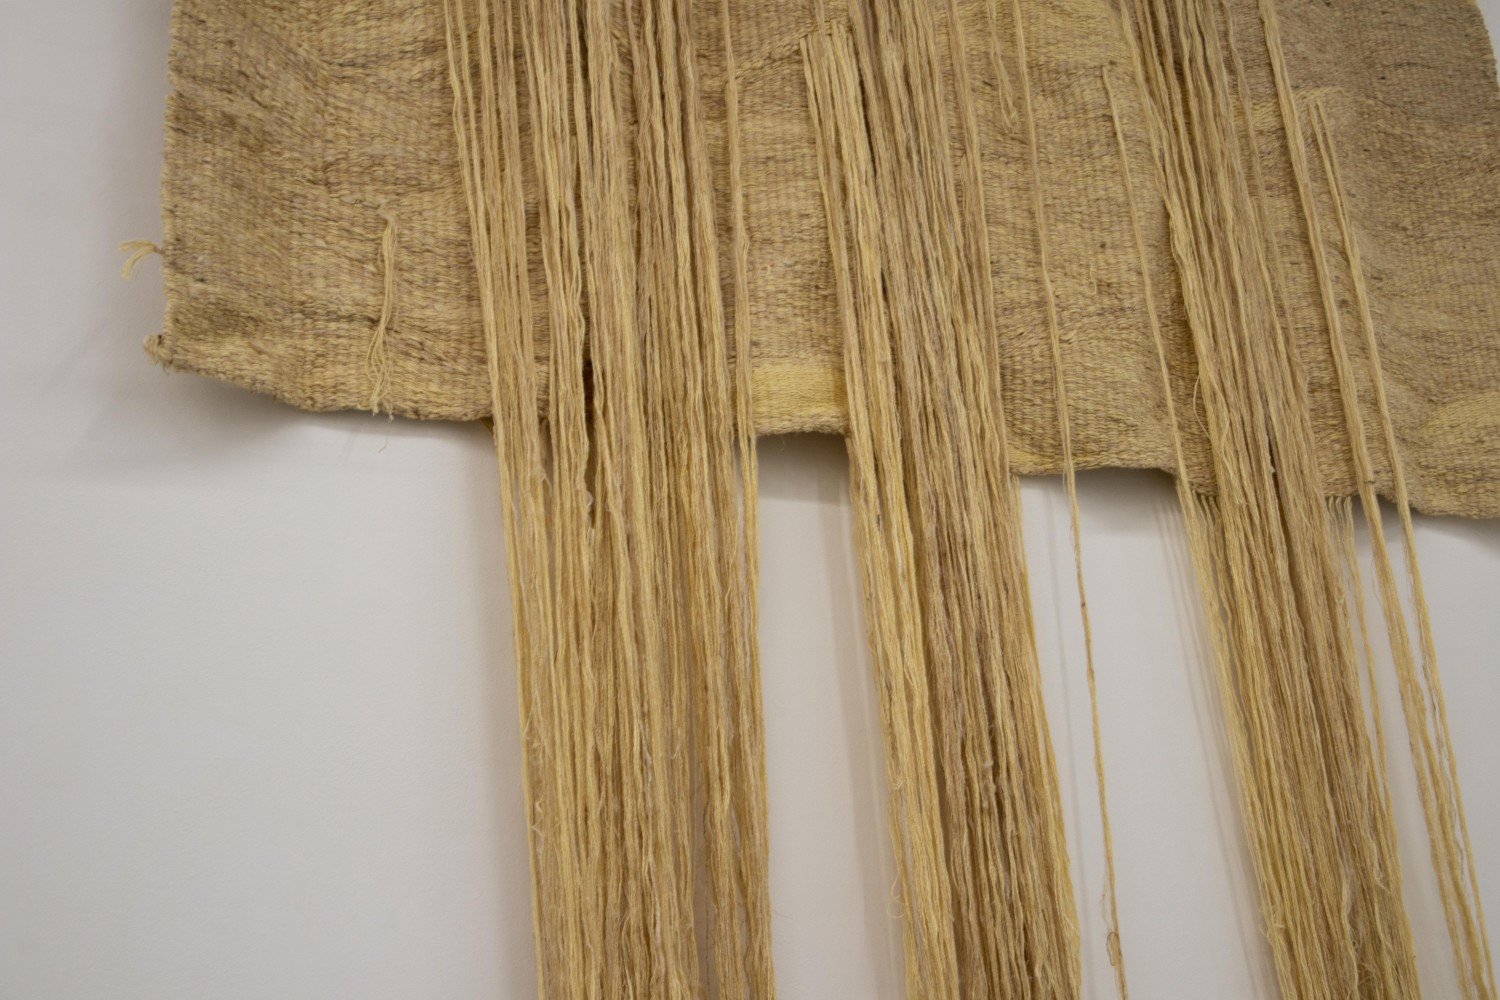 강수진_untitled_2018_wild silk,cotton,linen and pine_175x200cm@SoojinKang_untitled_2018_wild silk,cotton,linen and pine_175x200cm